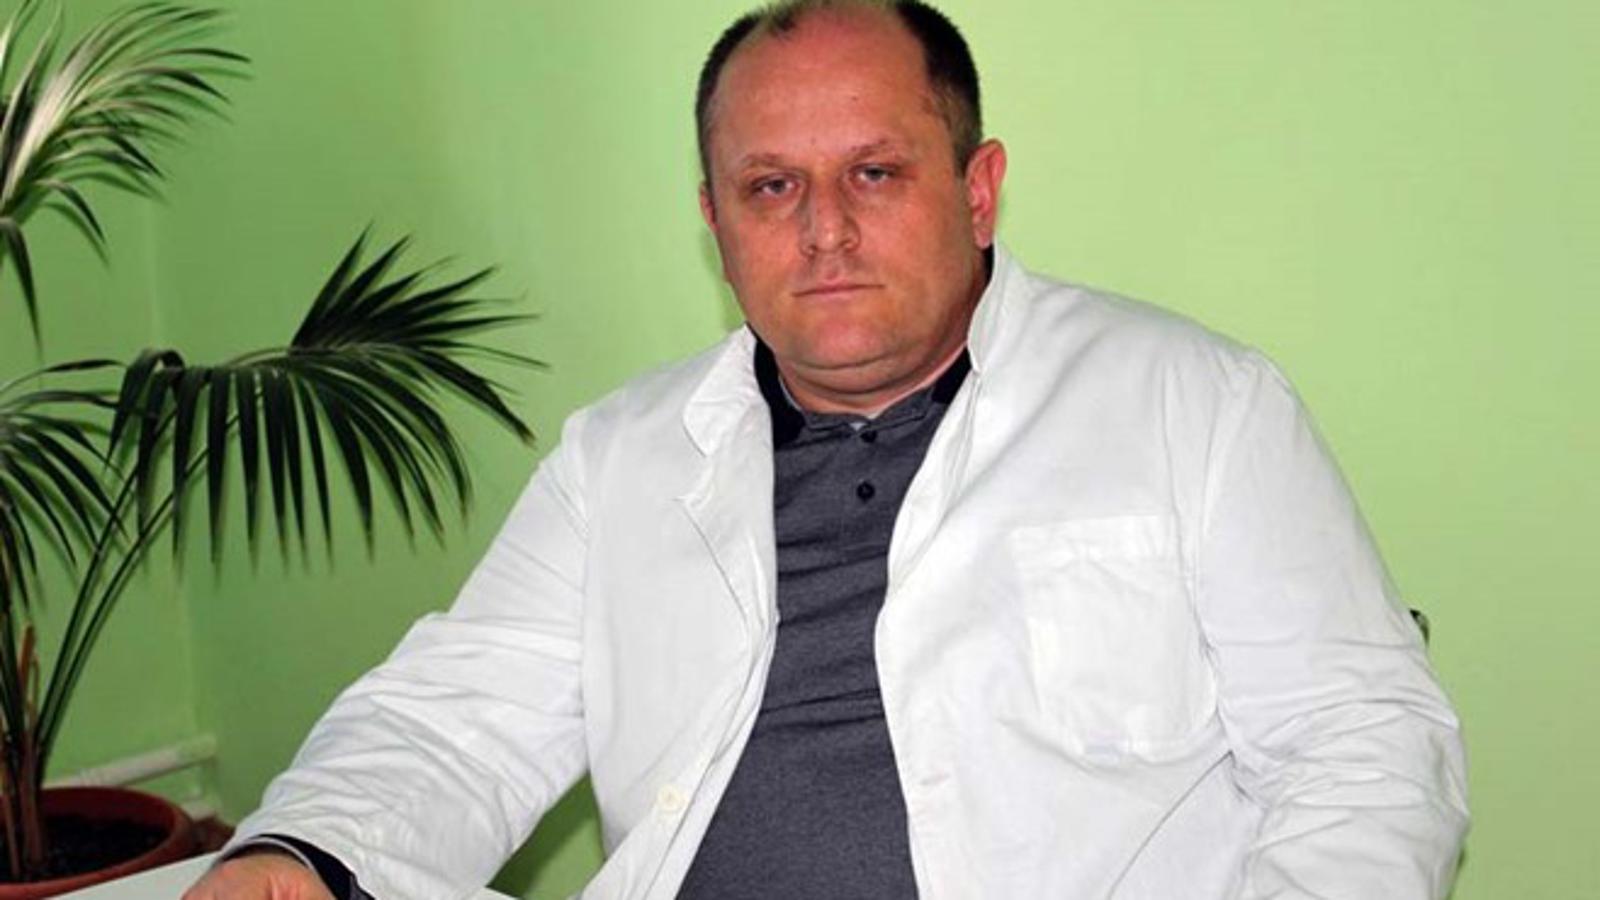 Dr. Josip Kolodziej